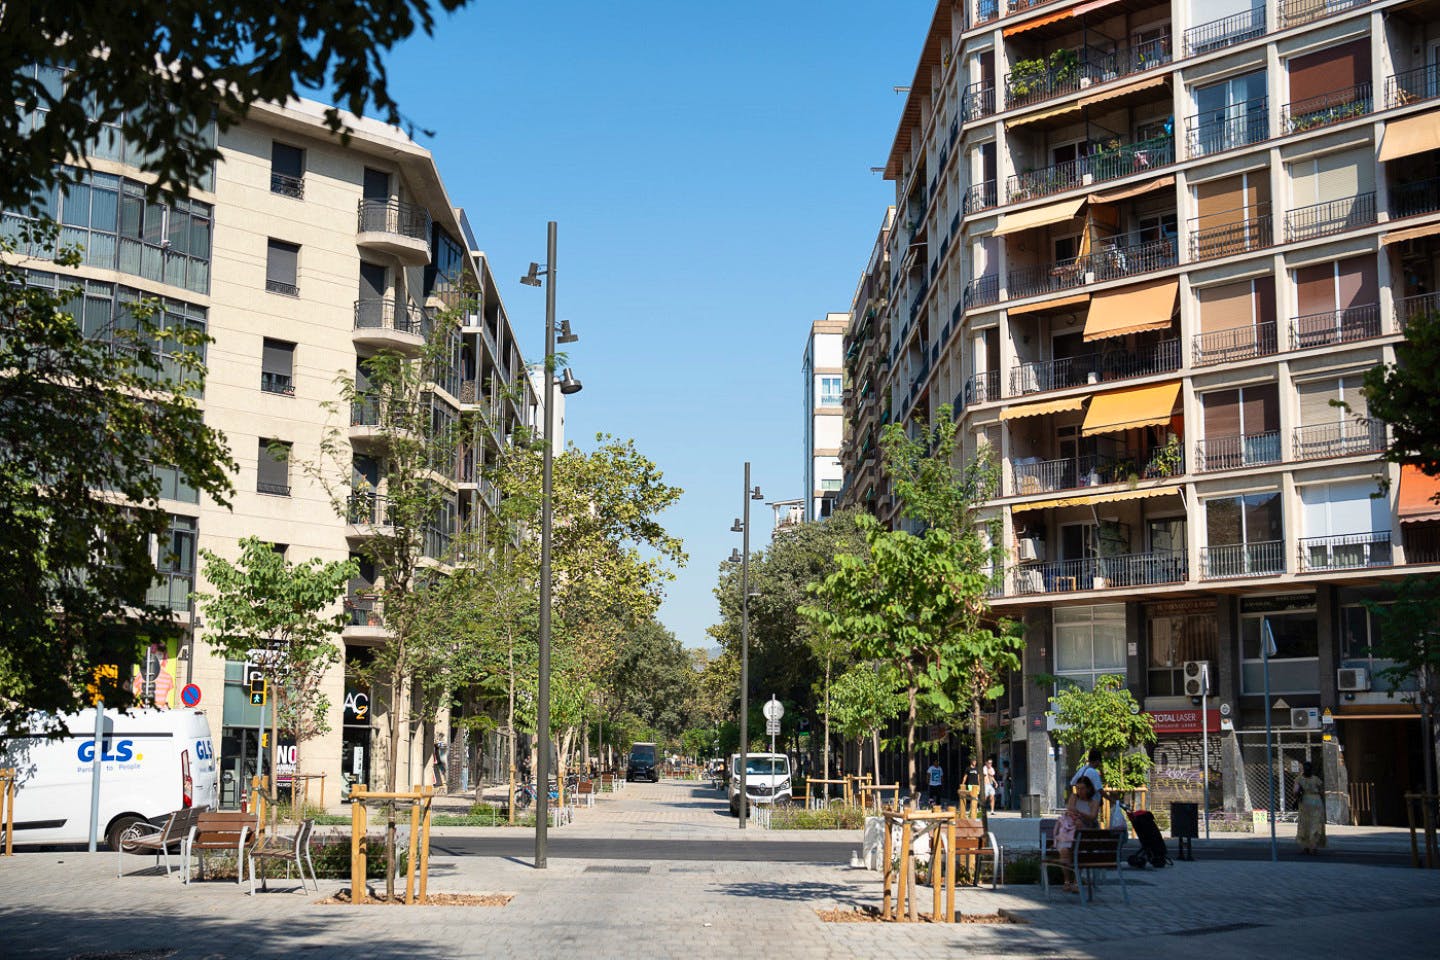 Vibrant apartment near Sant Antoni Market